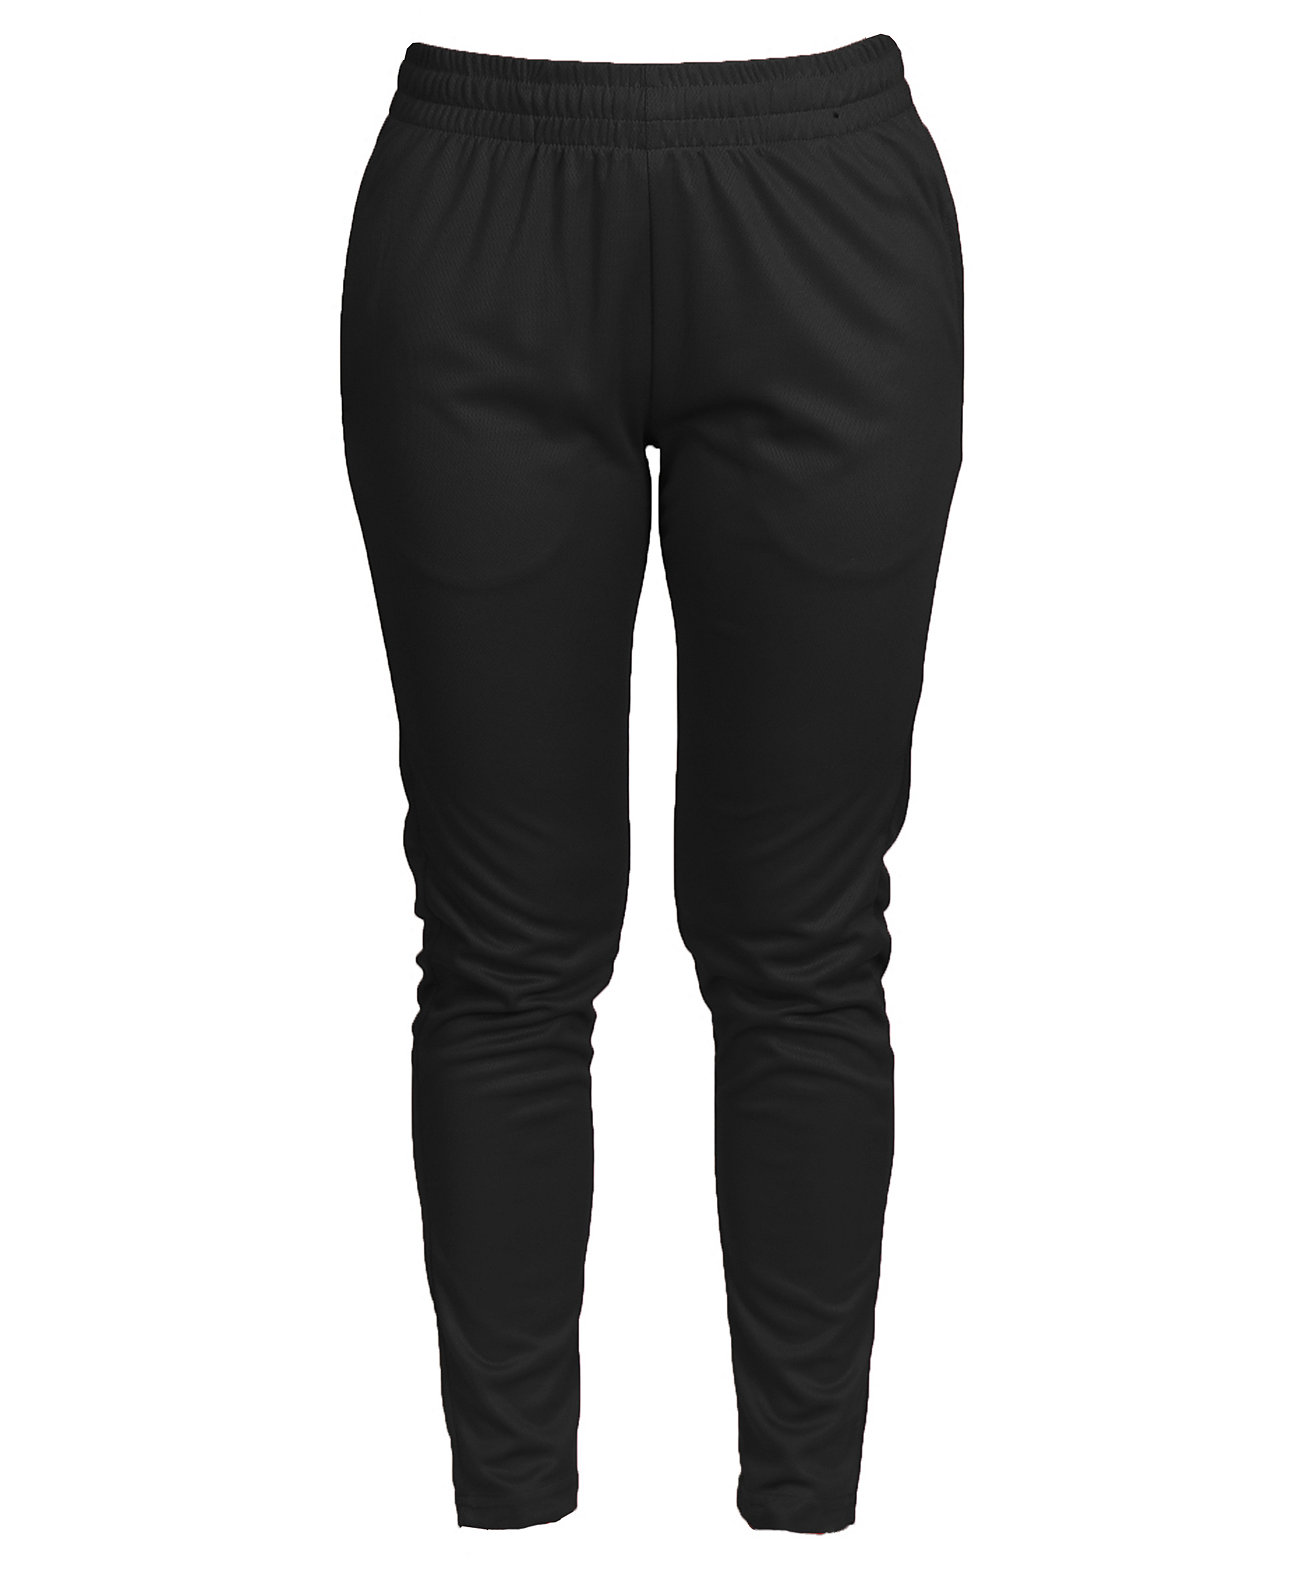 Мужские влагоотводящие спортивные штаны Dry Fit Active Galaxy By Harvic